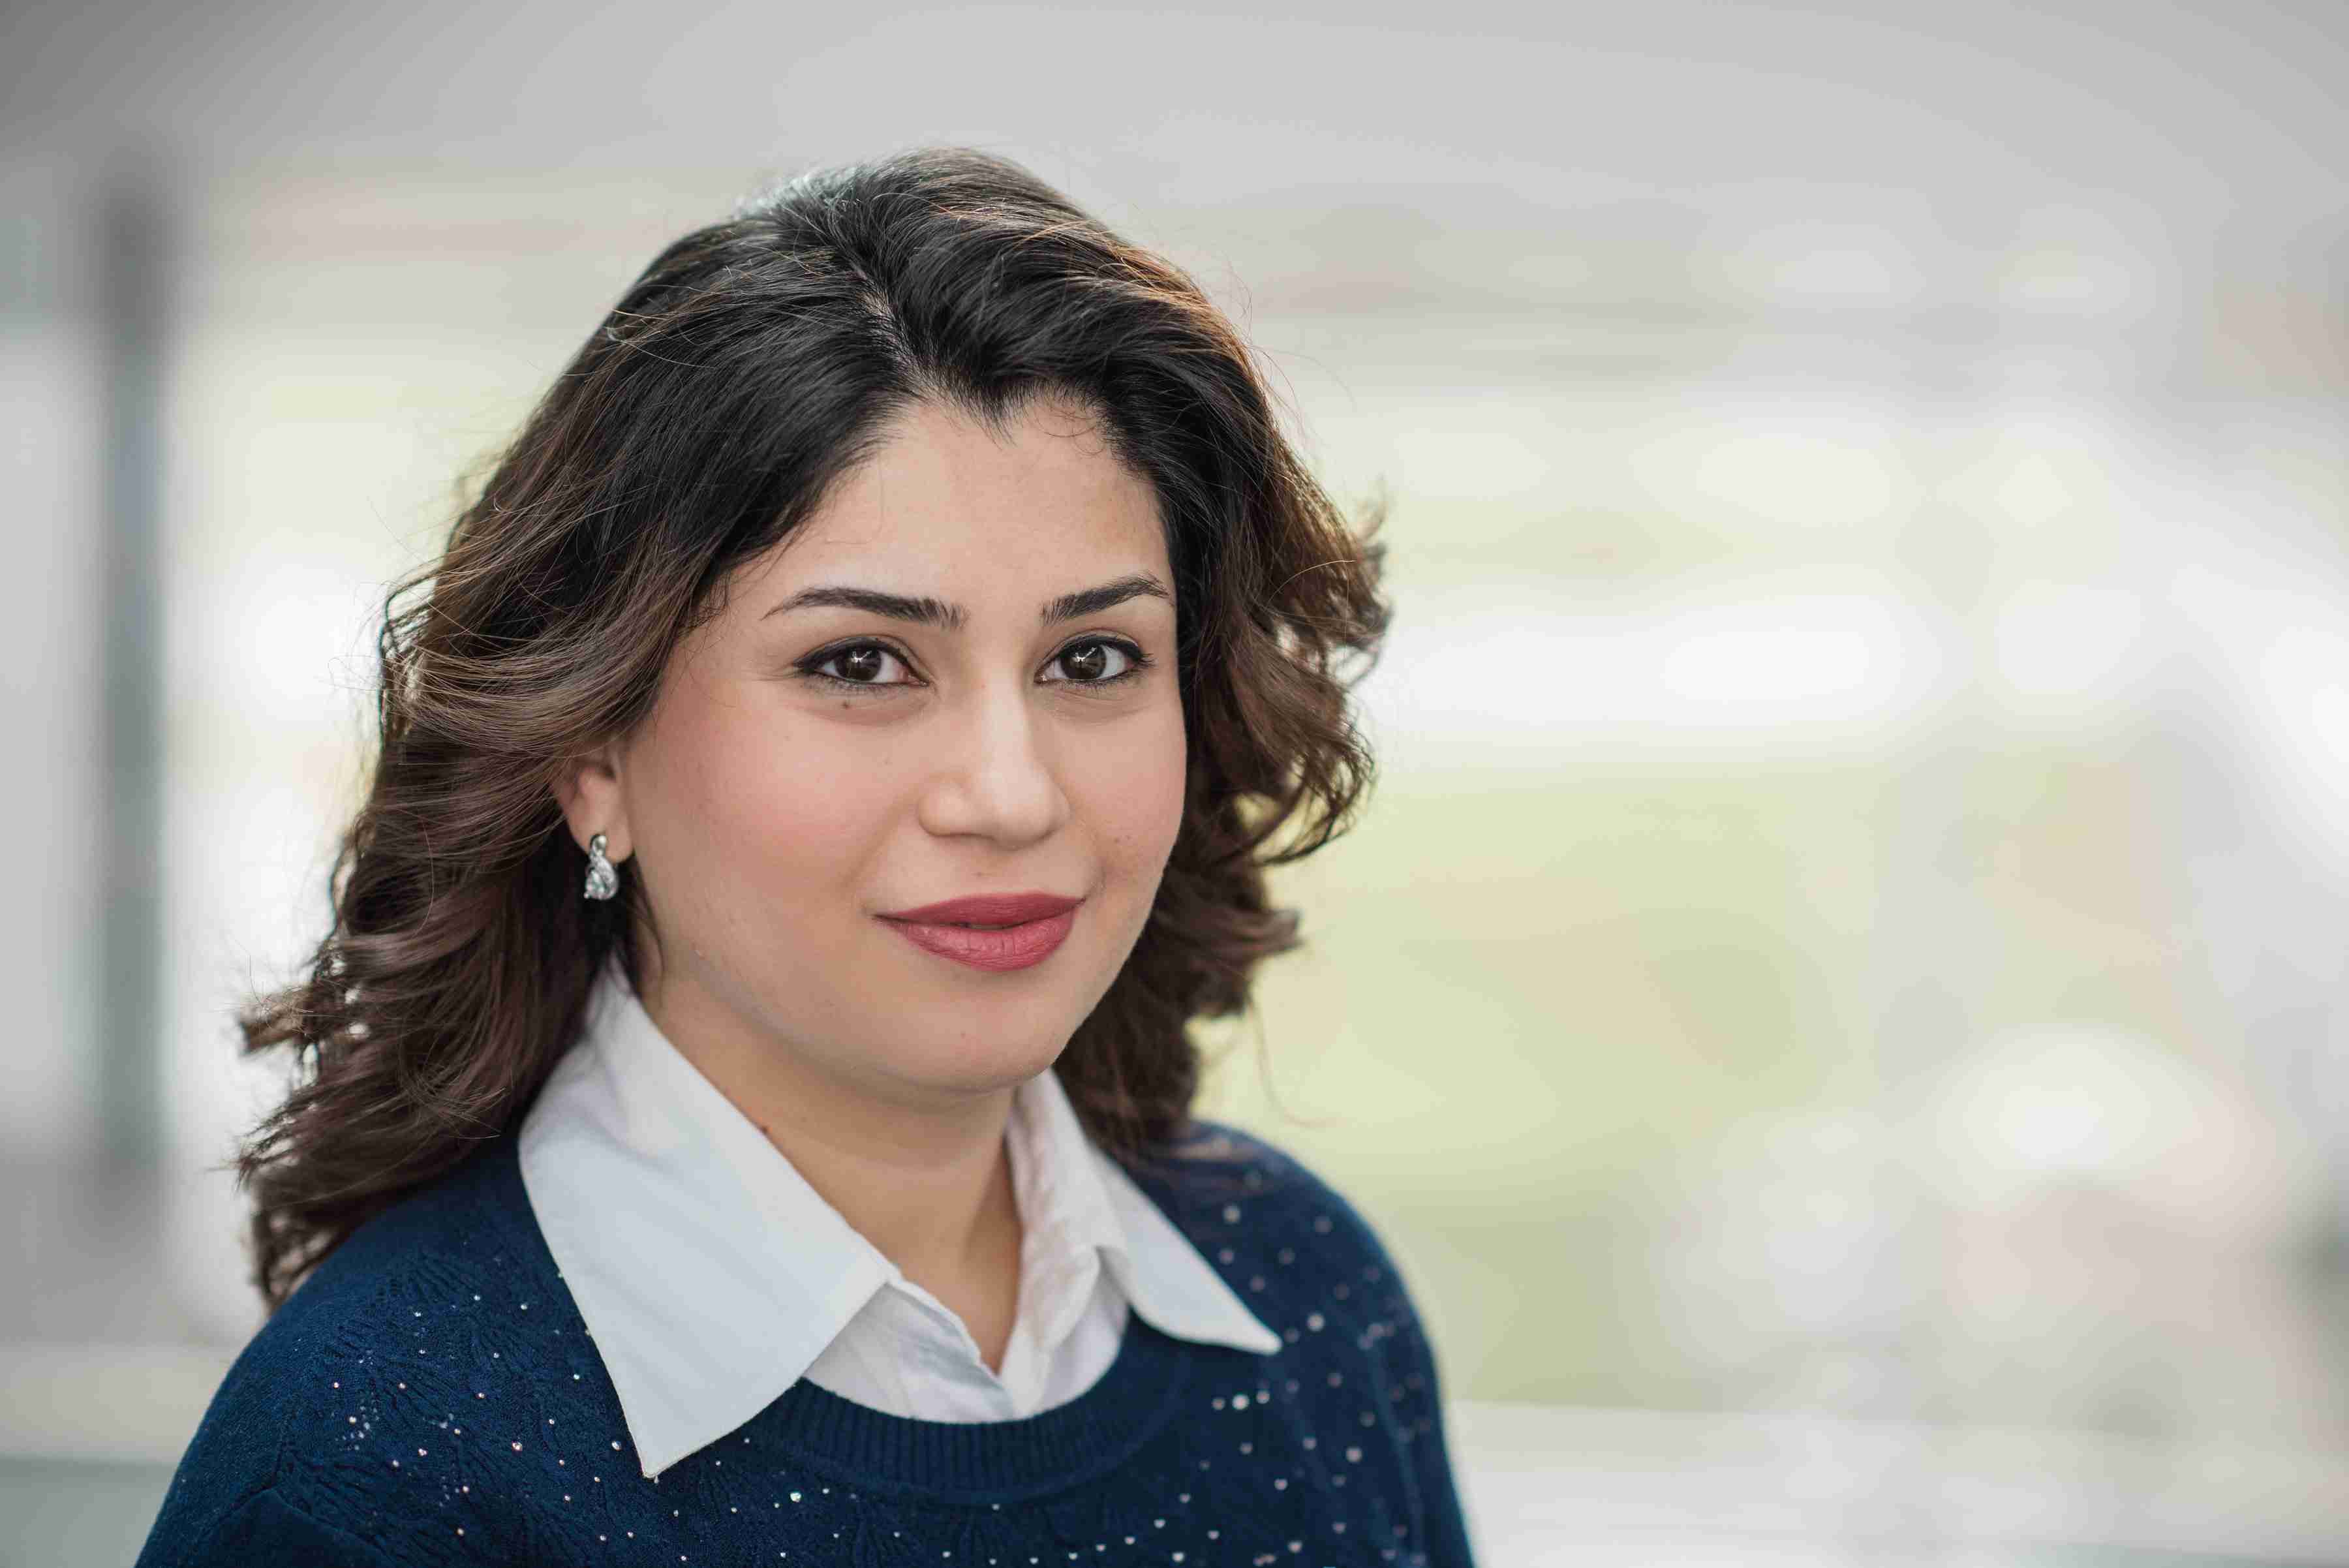 Profile image of Dr Sahar Khonsari